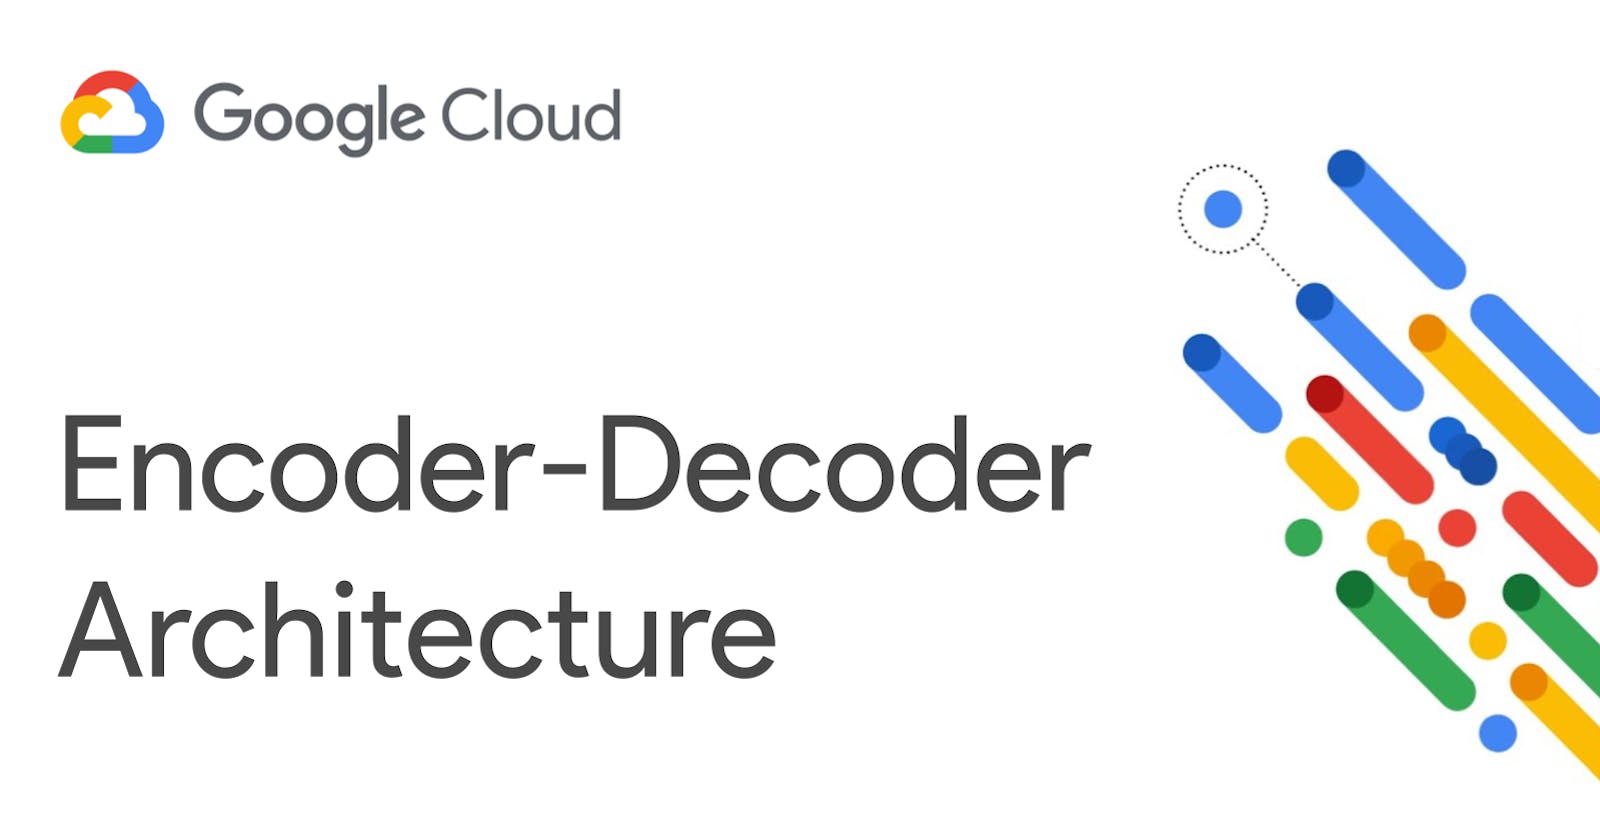 Encoder-Decoder Architecture